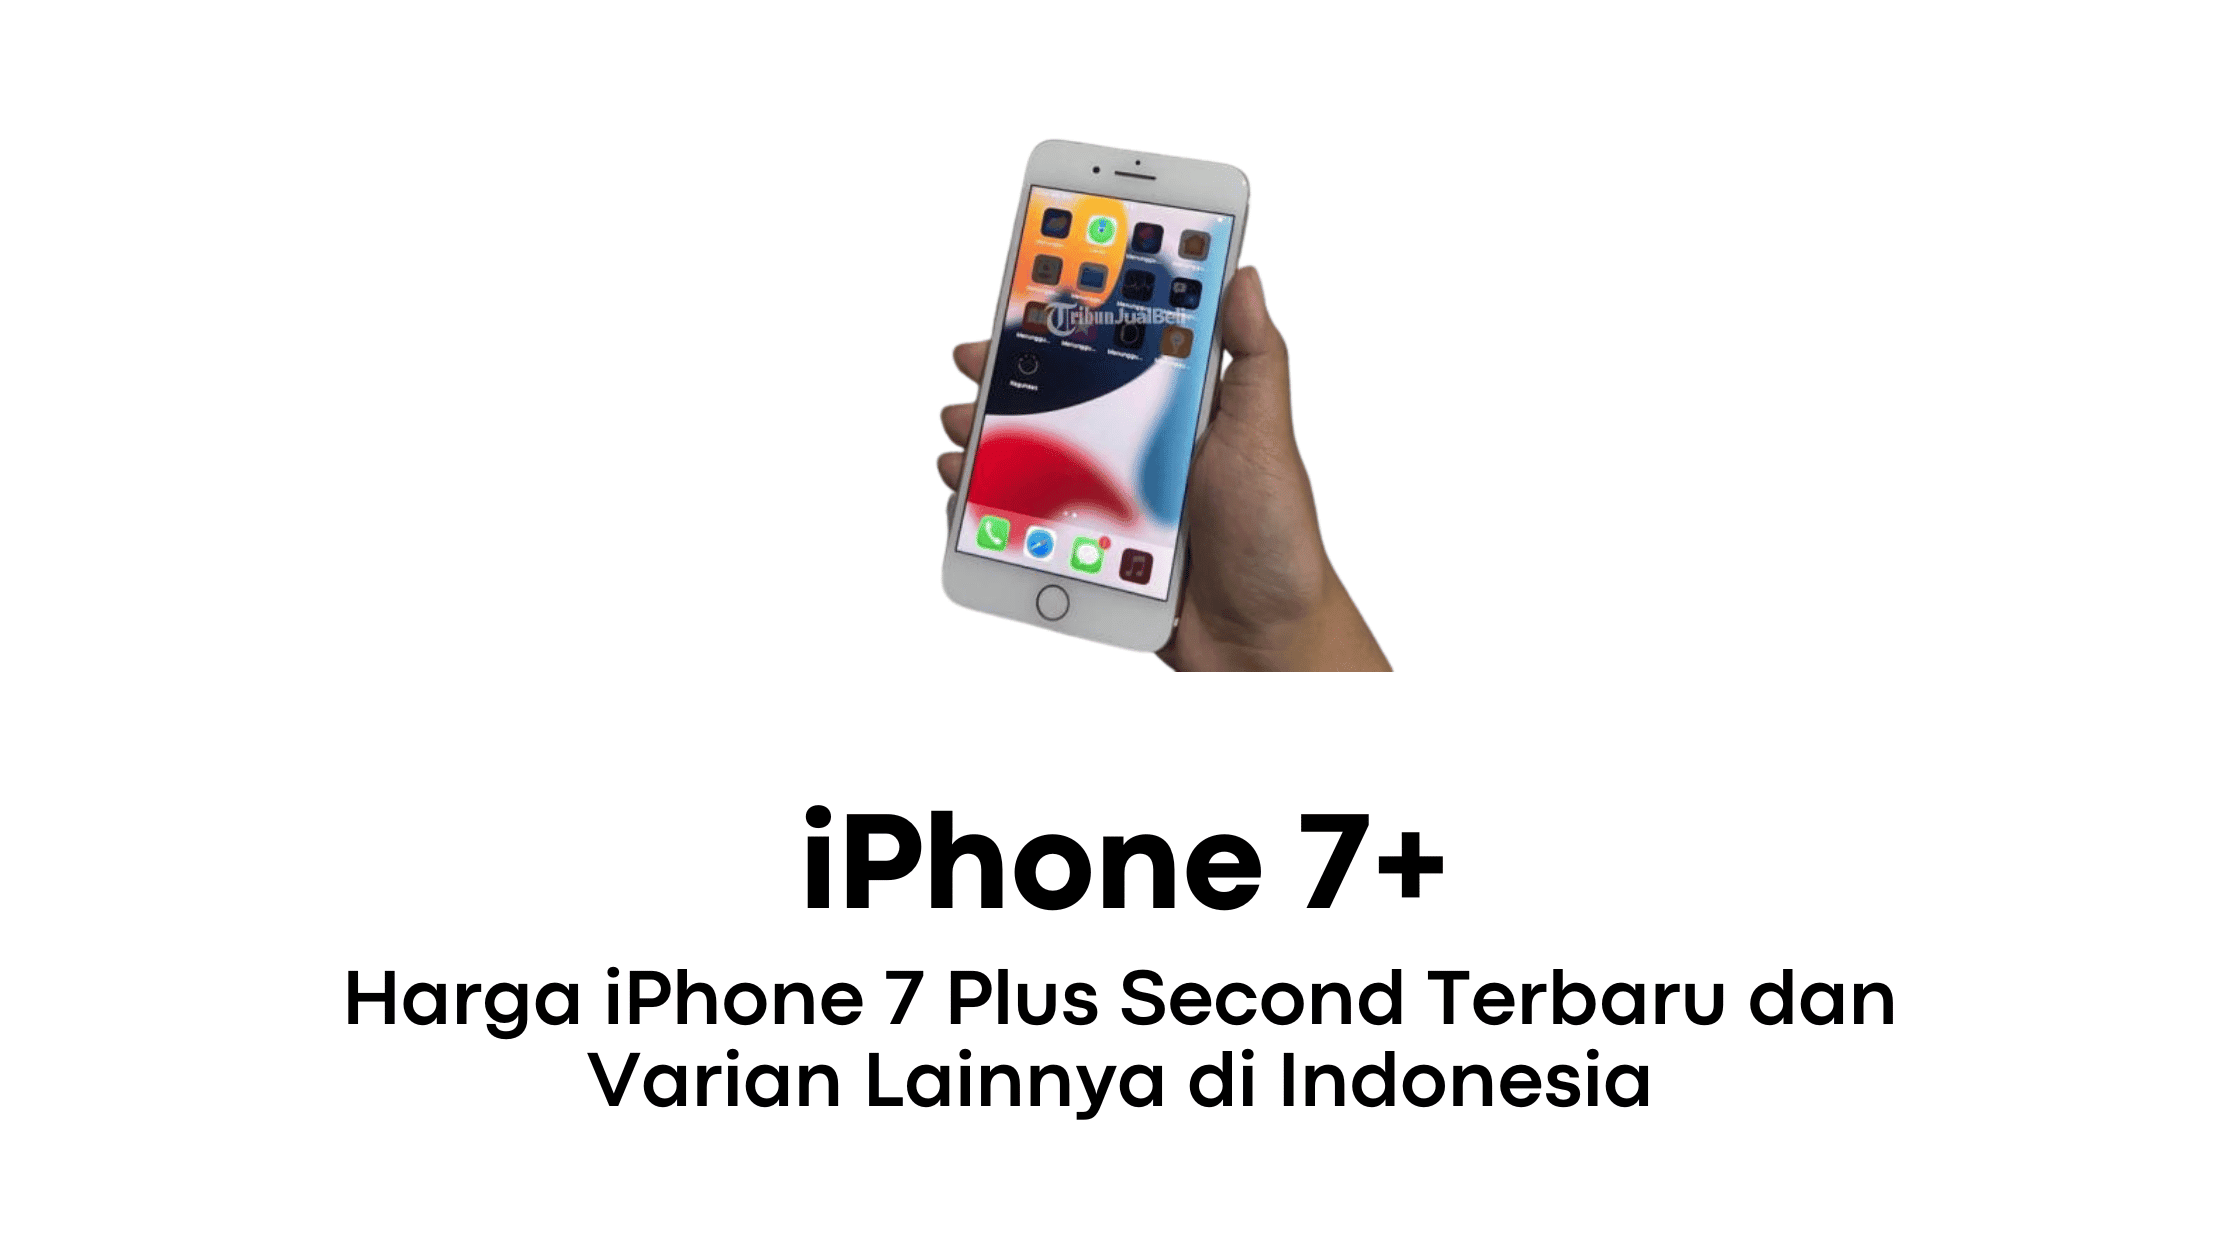 Harga iPhone 7 Plus Second Terbaru dan Varian Lainnya di Indonesia